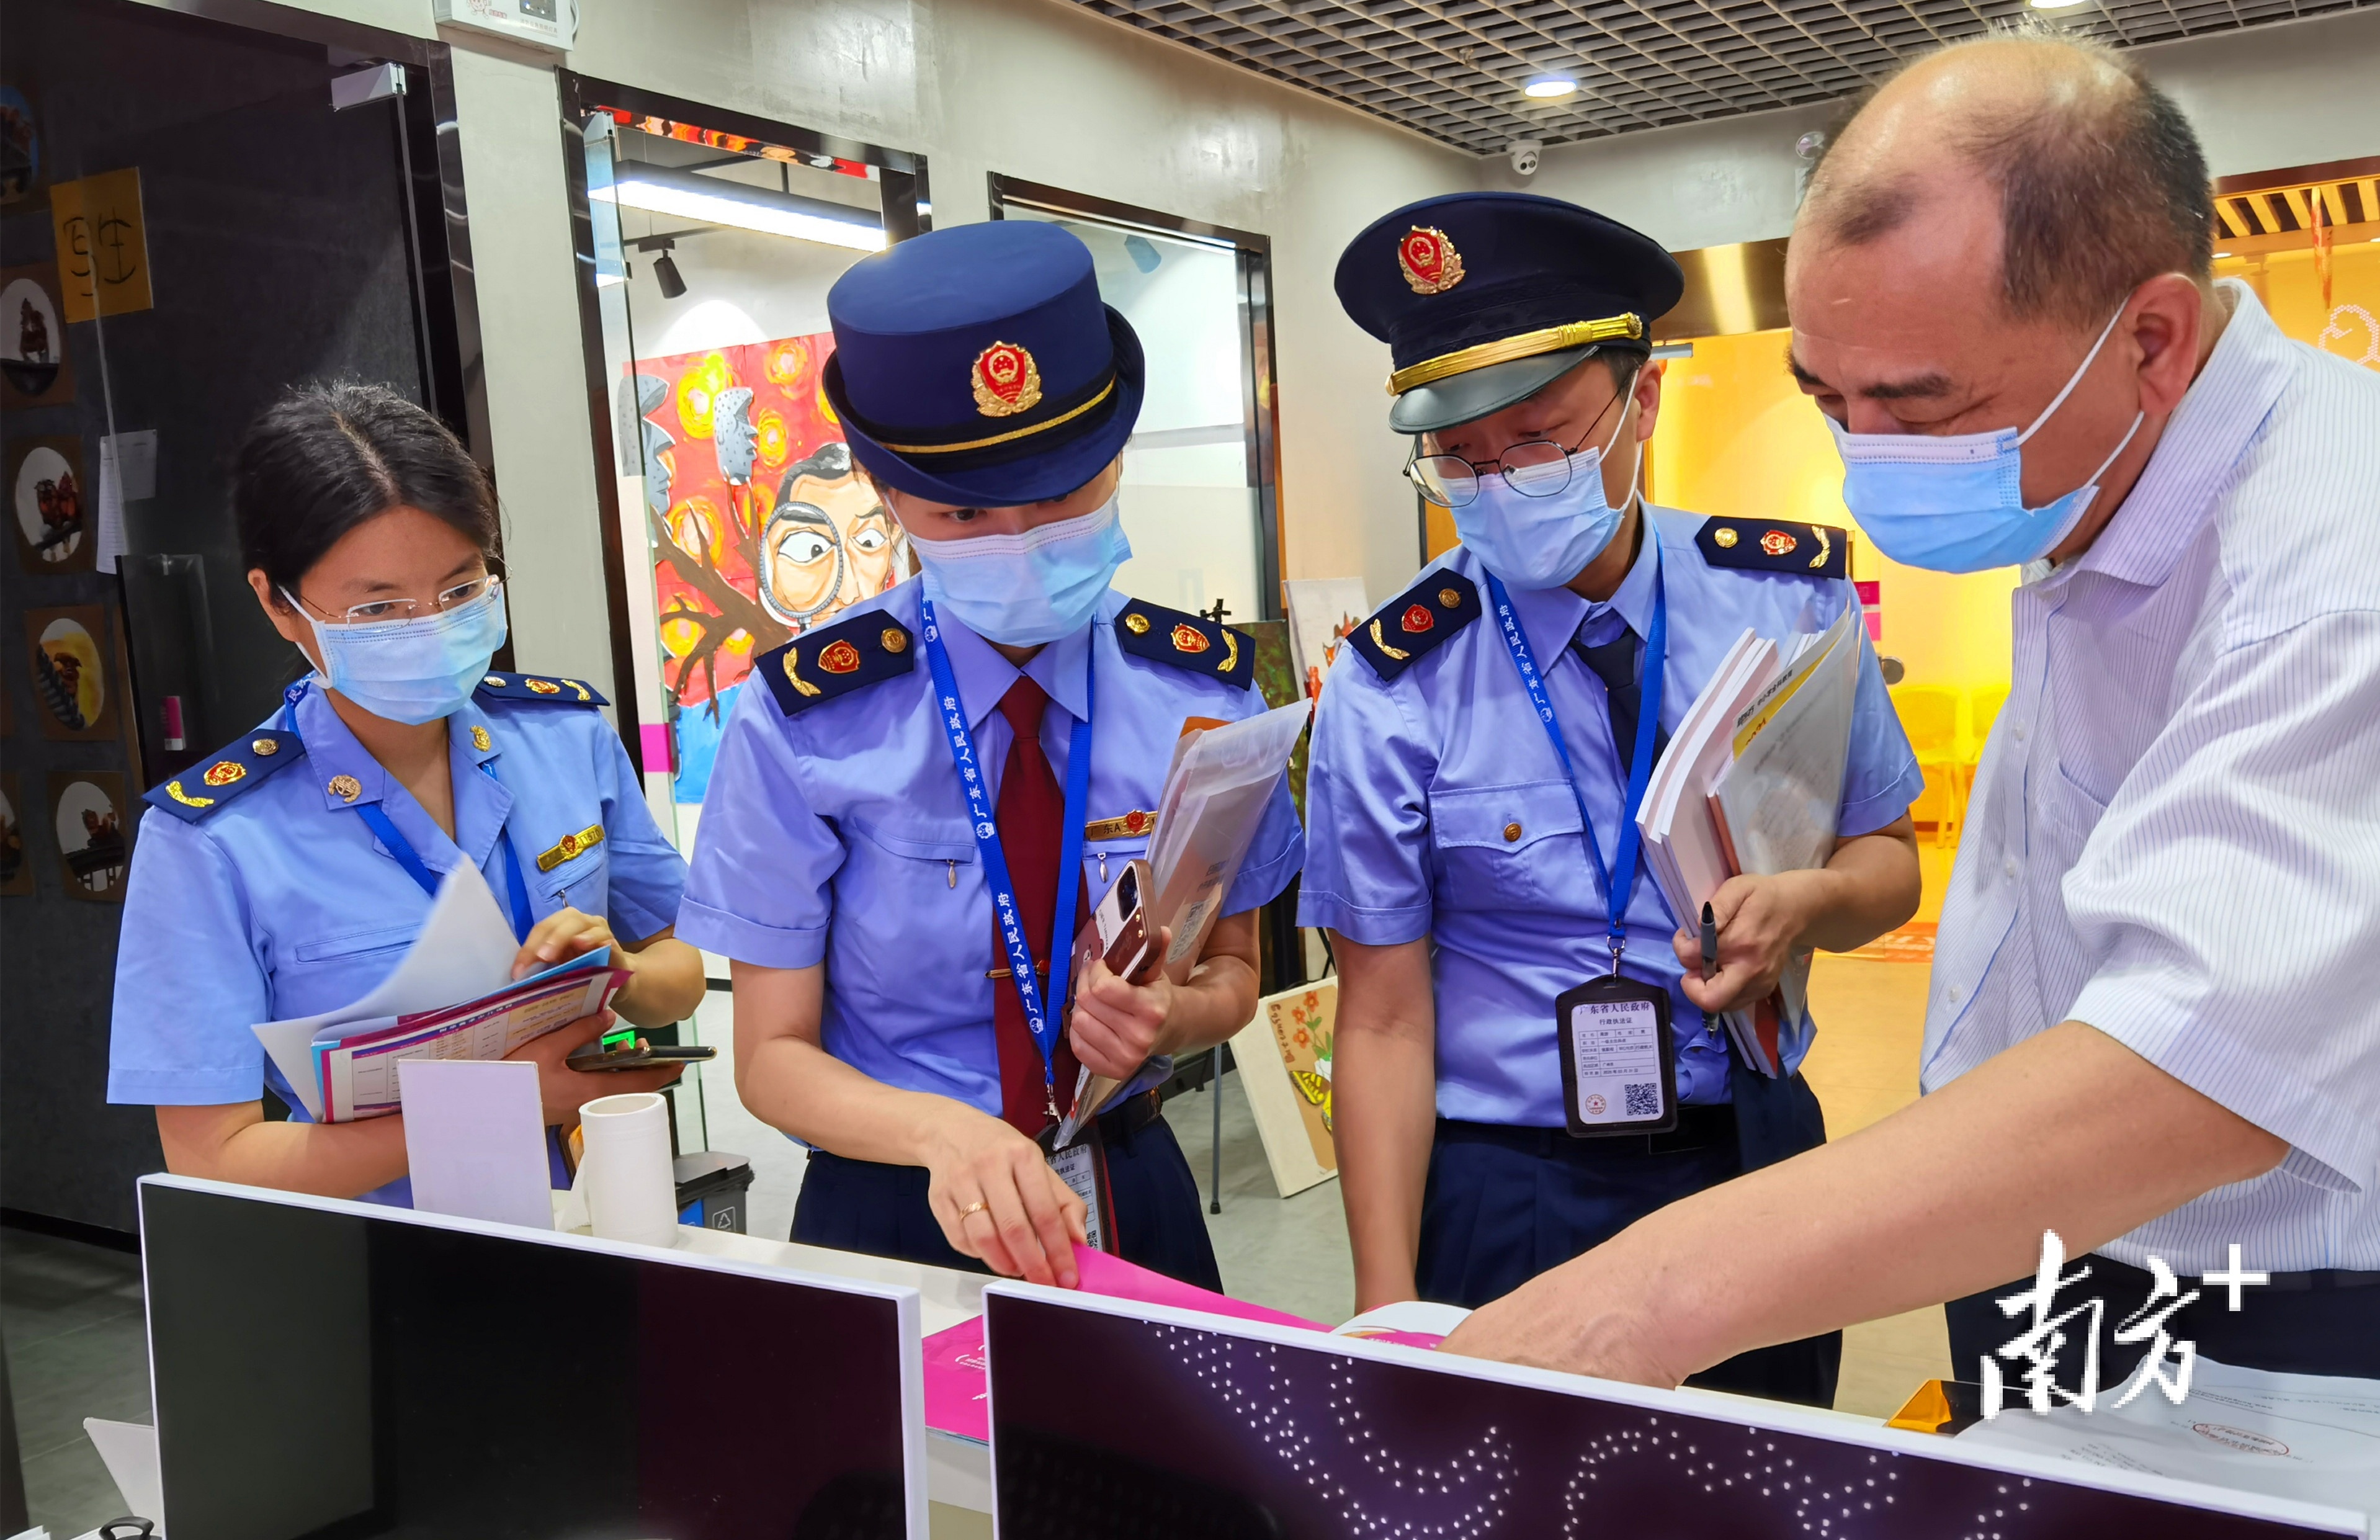 5月18日至19日，广州市市场监管局会同市教育局开展教育培训广告专项联合执法行动，对全市校外培训机构集中分布区域进行重点检查。